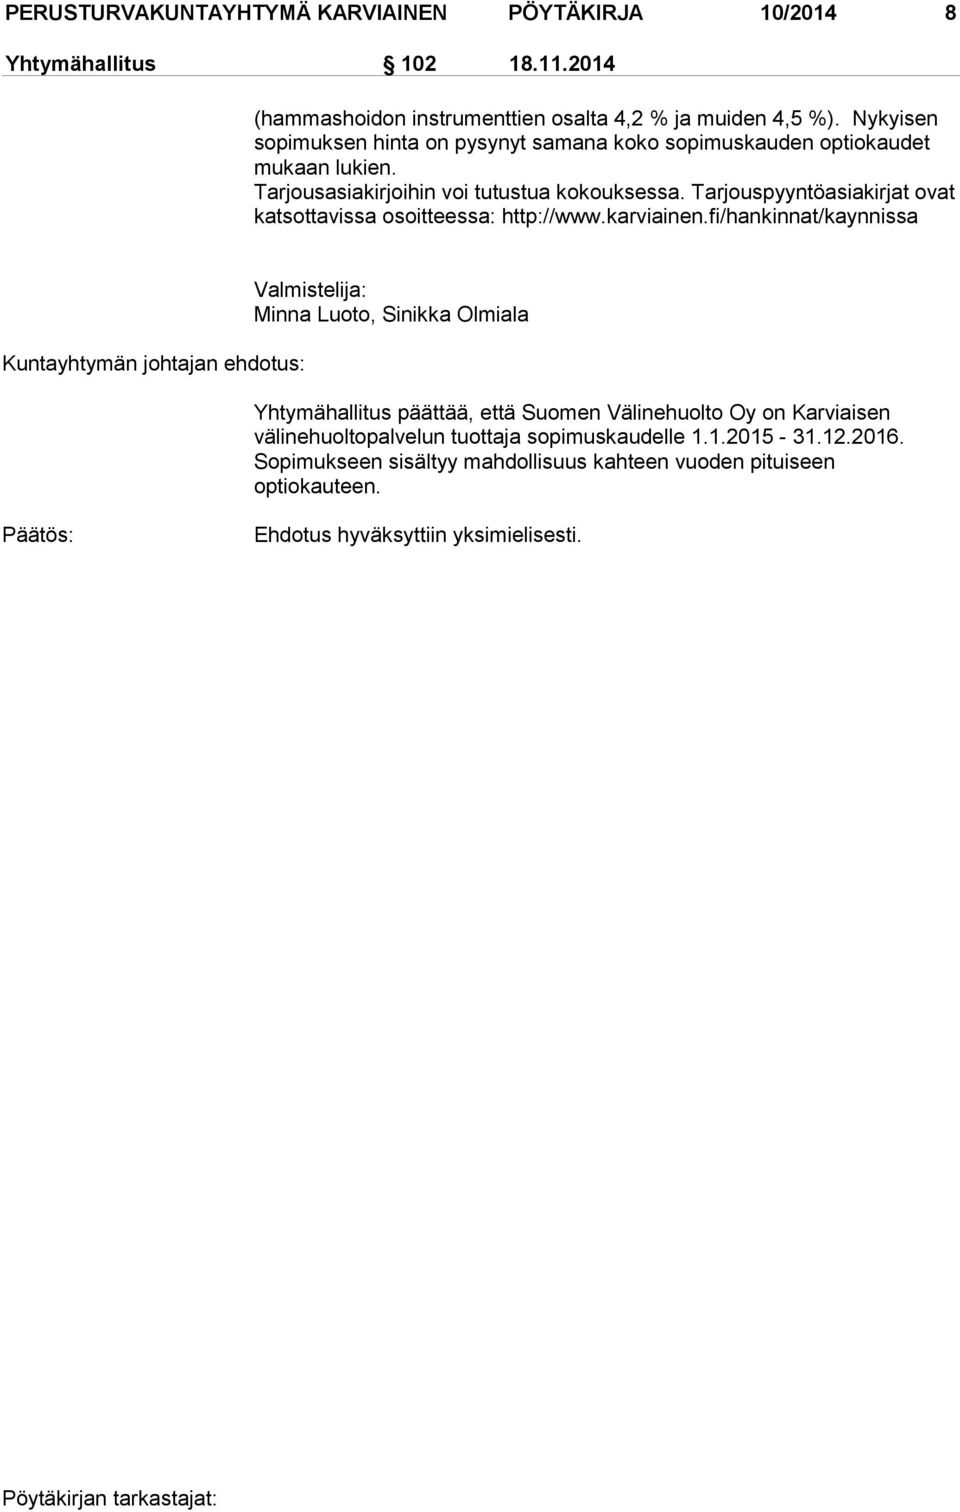 Tarjouspyyntöasiakirjat ovat katsottavissa osoitteessa: http://www.karviainen.